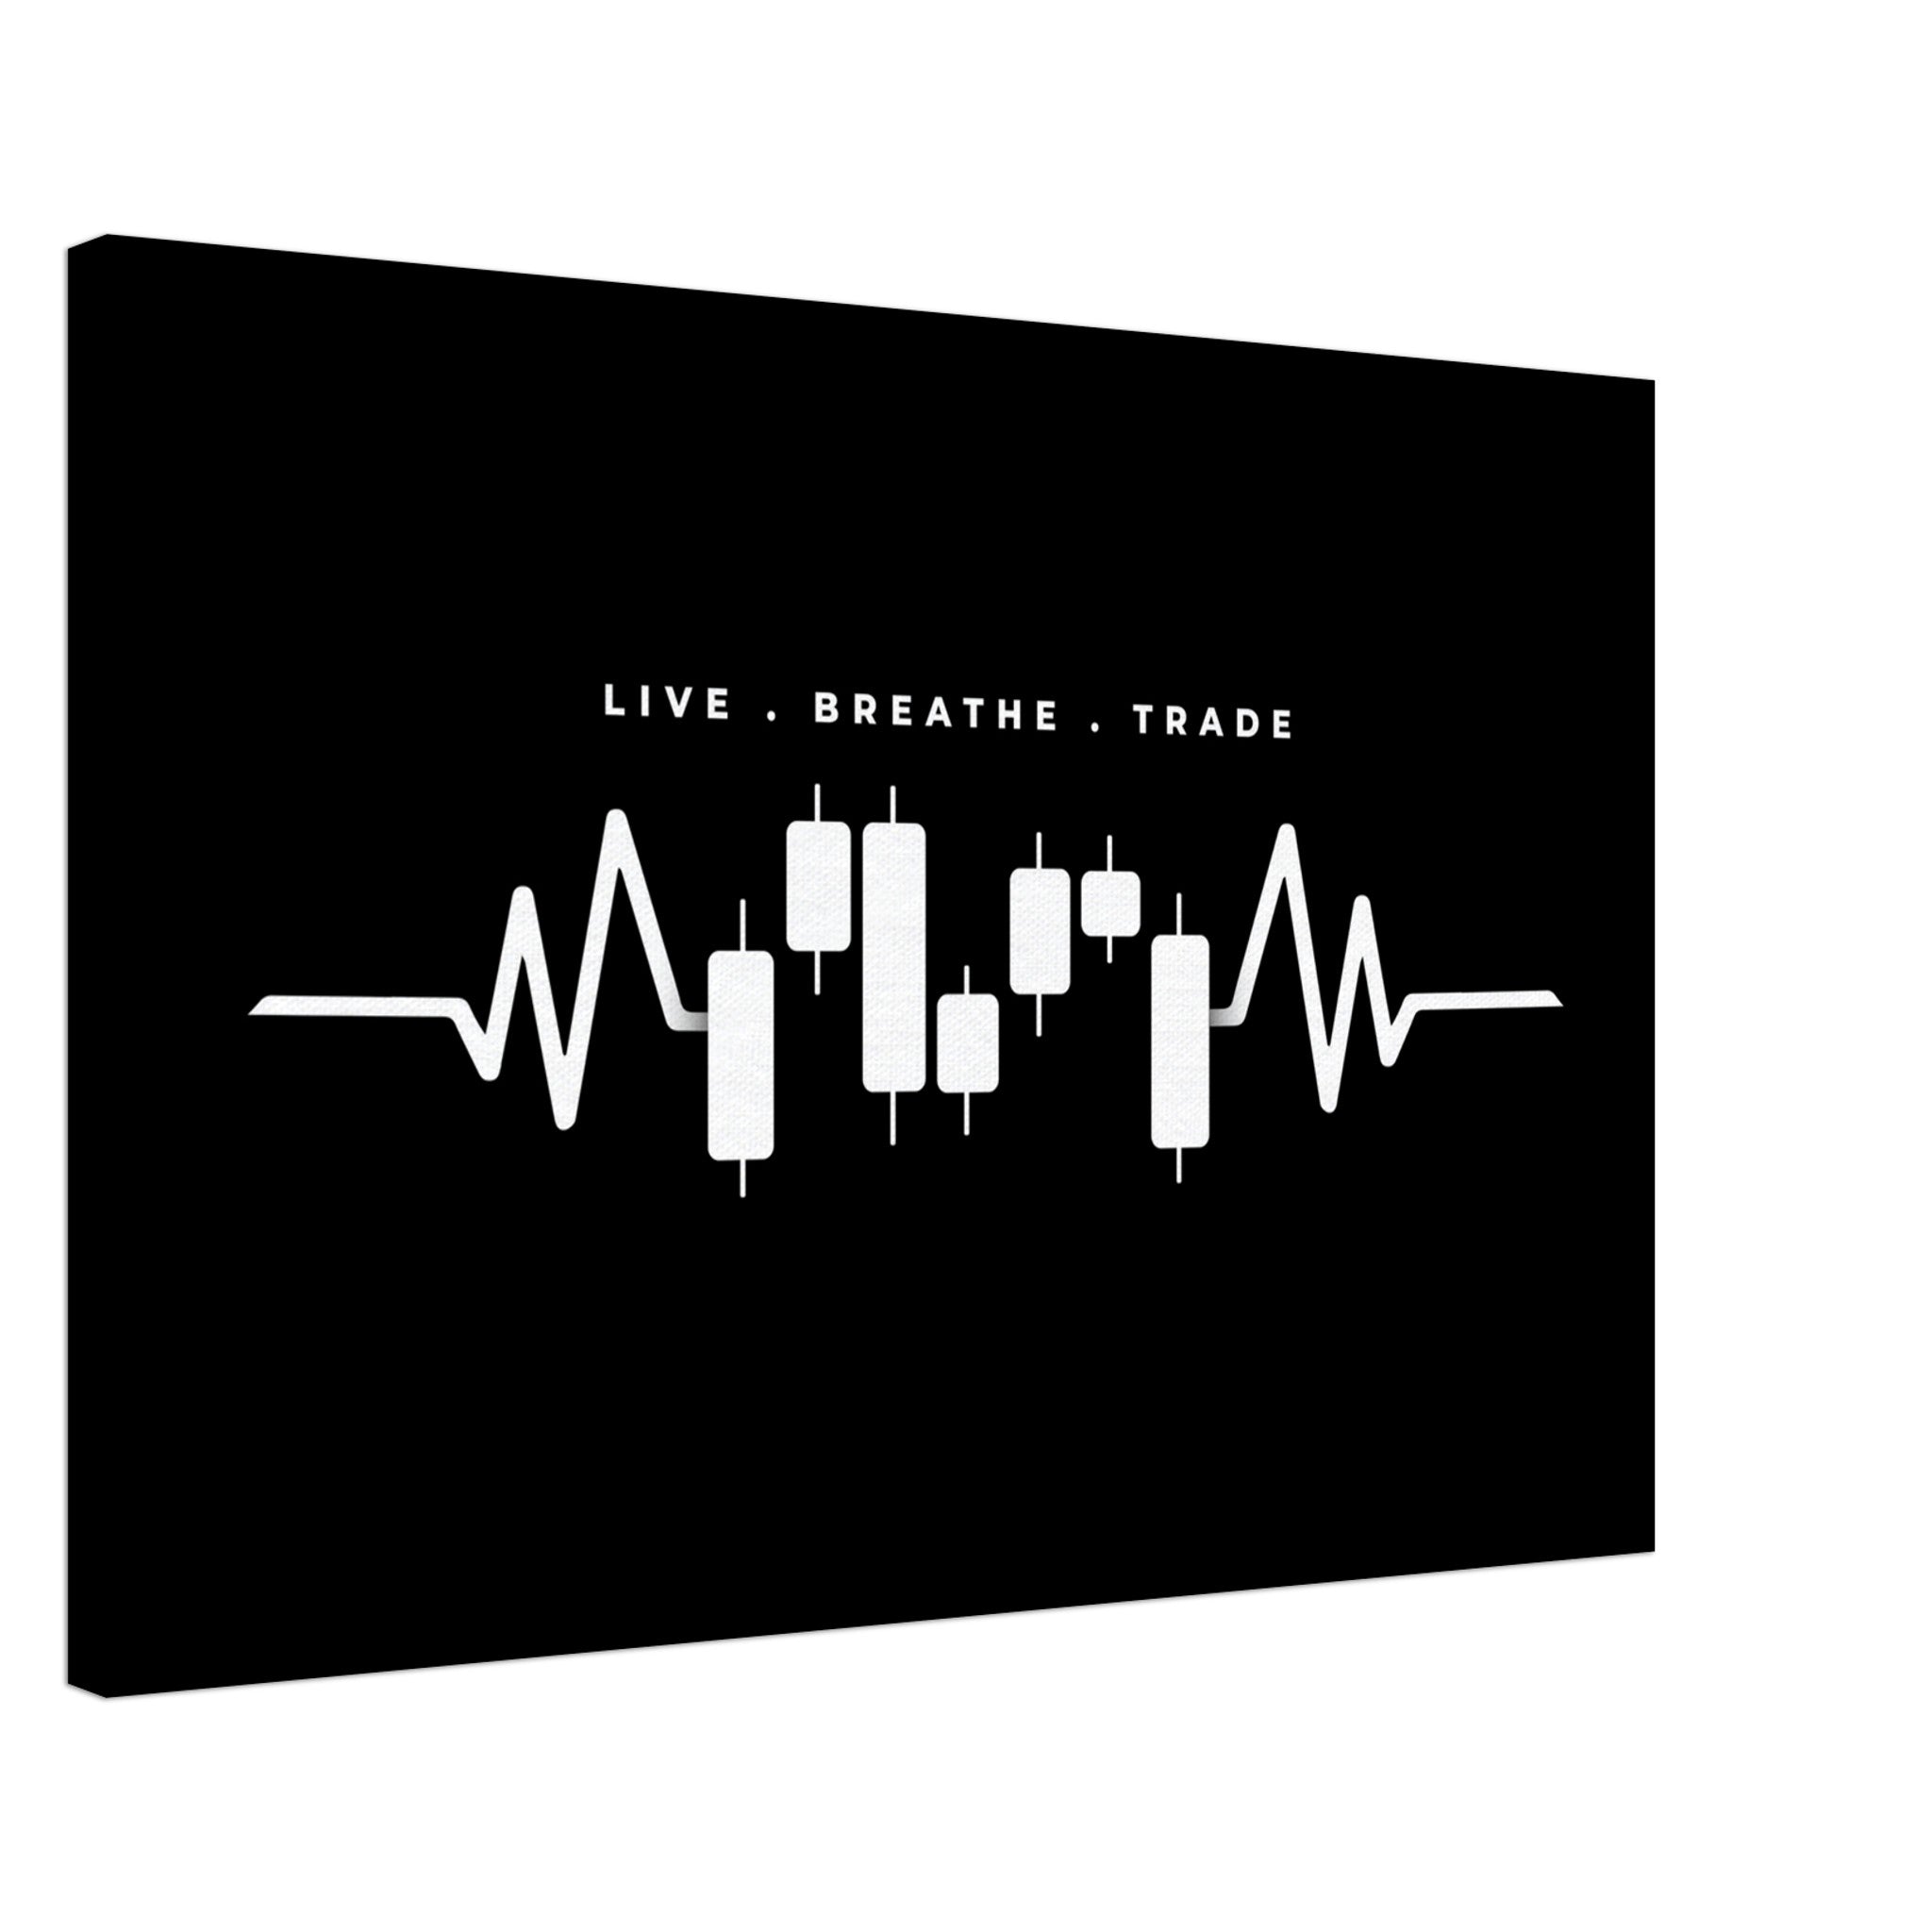 Live, Breathe, Trade (Version 1)